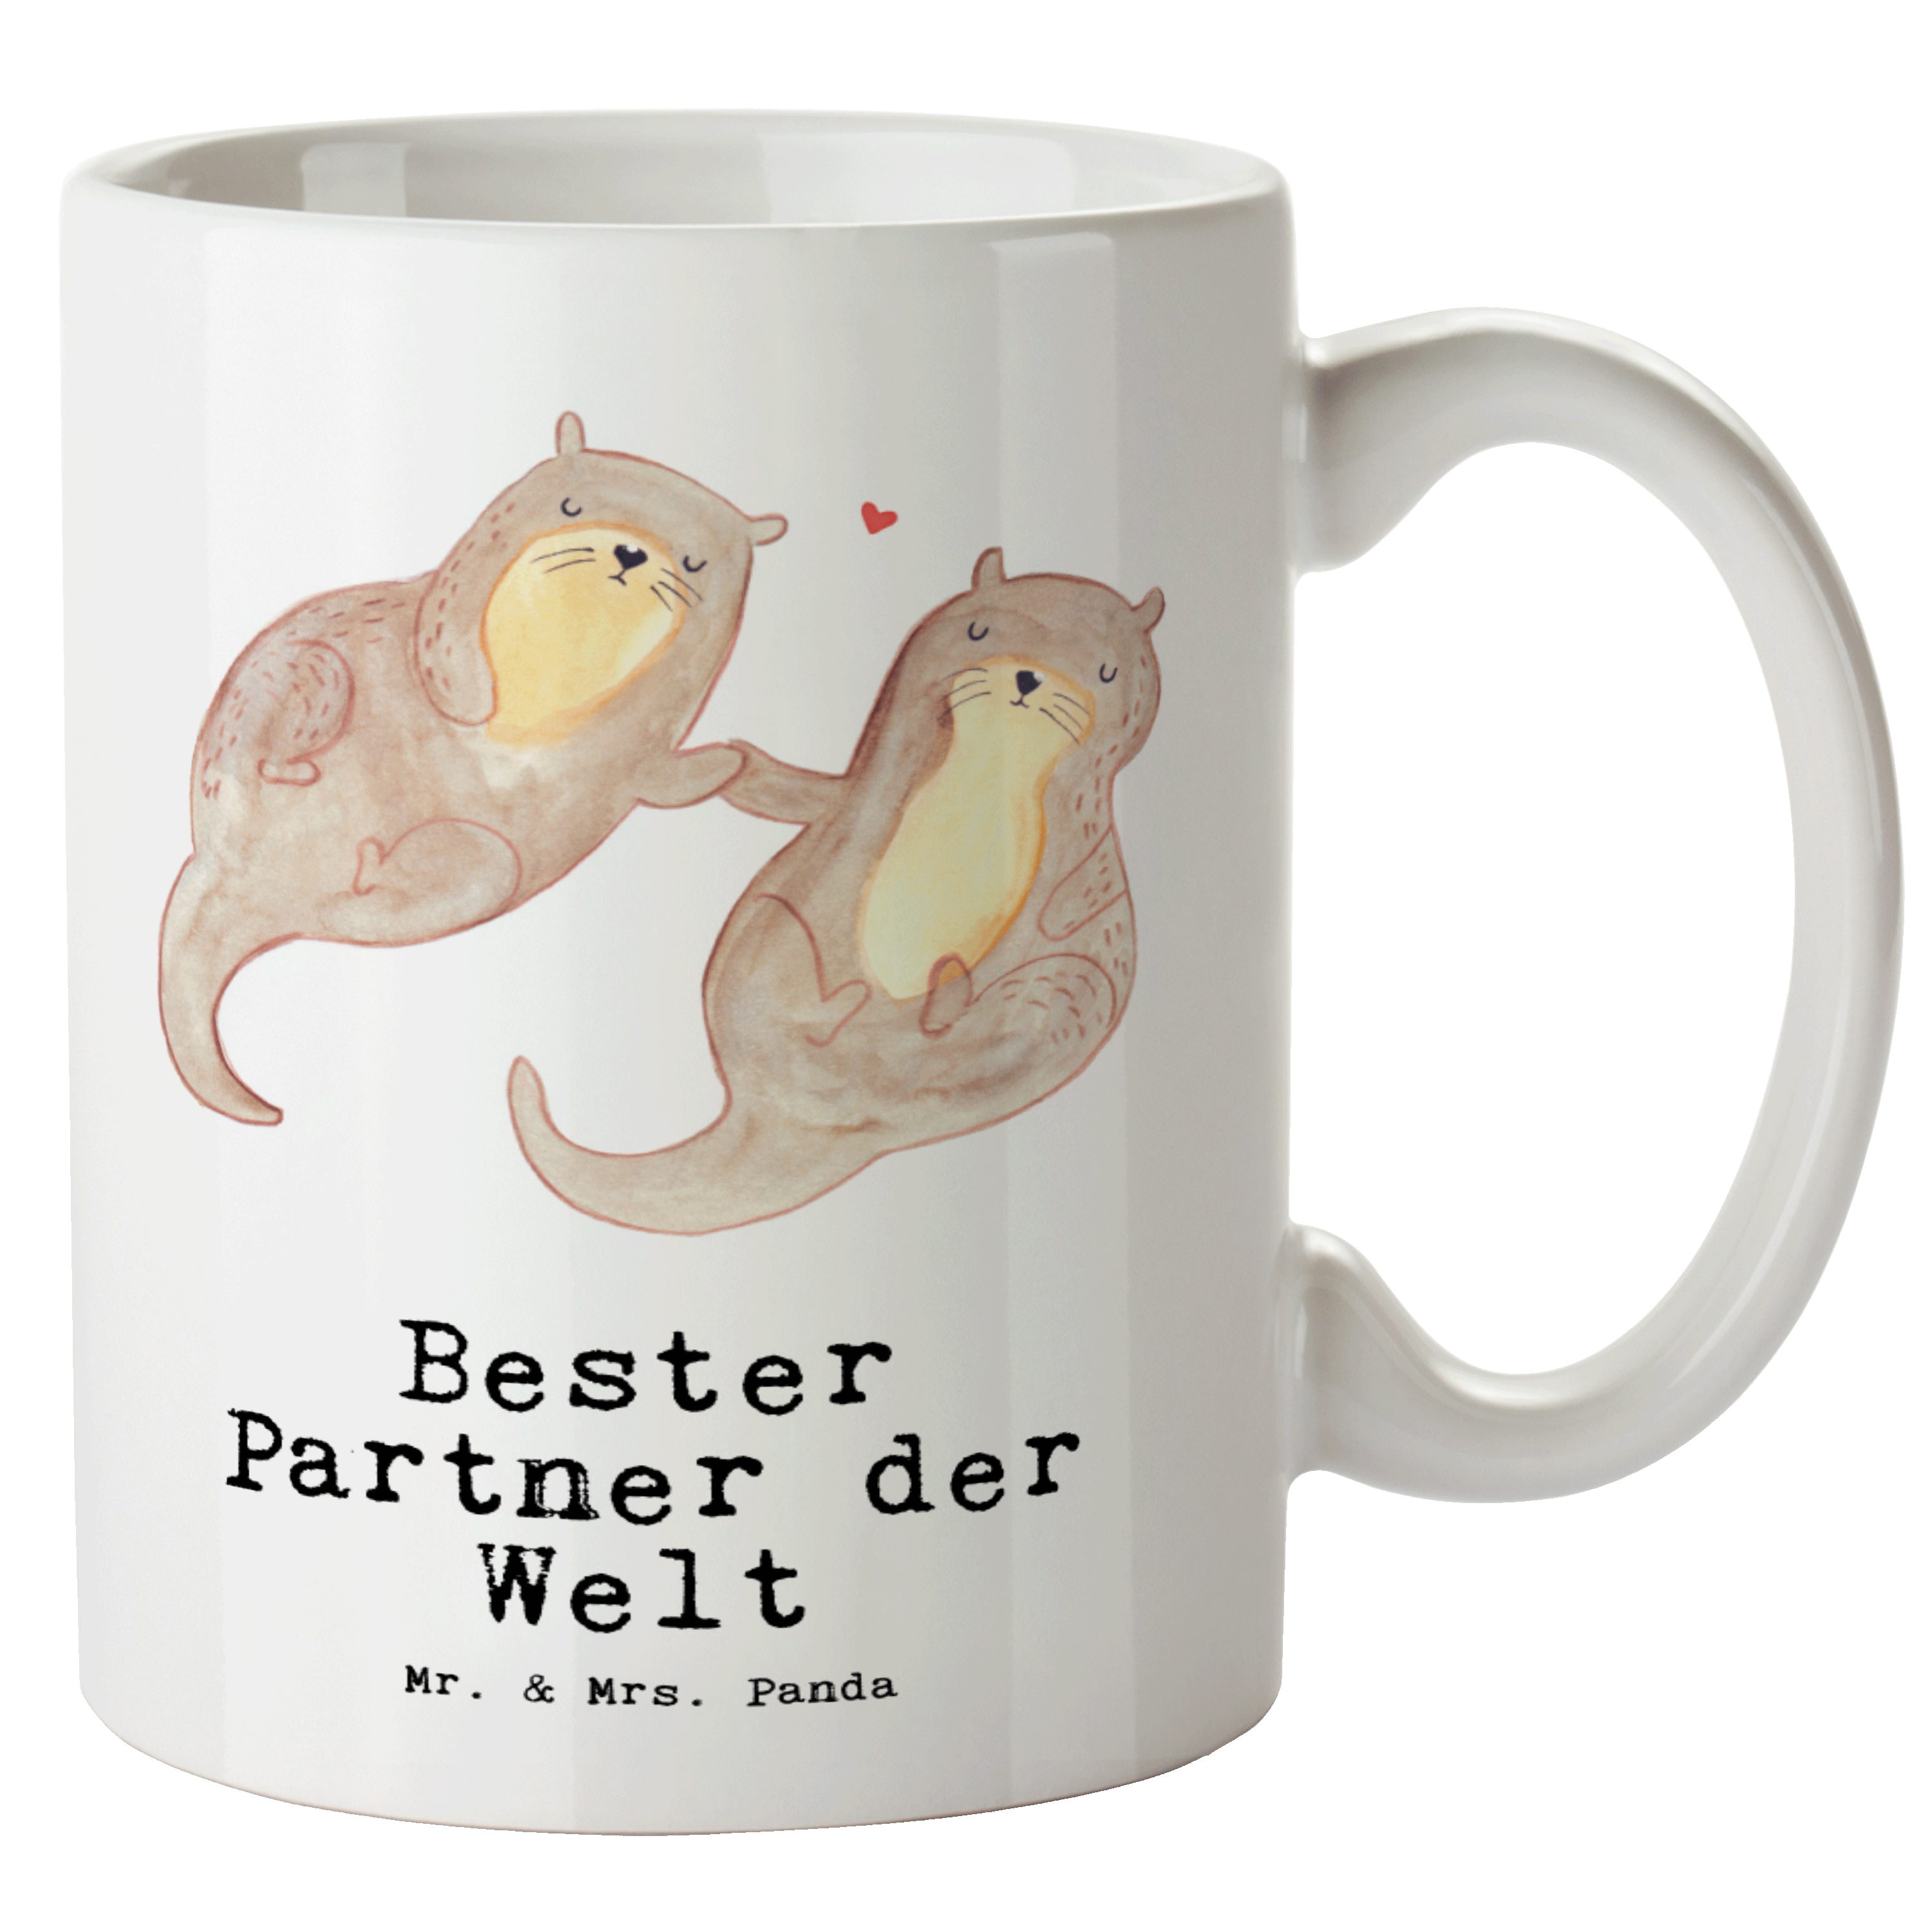 Mr. & Mrs. Panda Tasse Otter Bester Partner der Welt - Weiß - Geschenk, spülmaschinenfest, G, XL Tasse Keramik